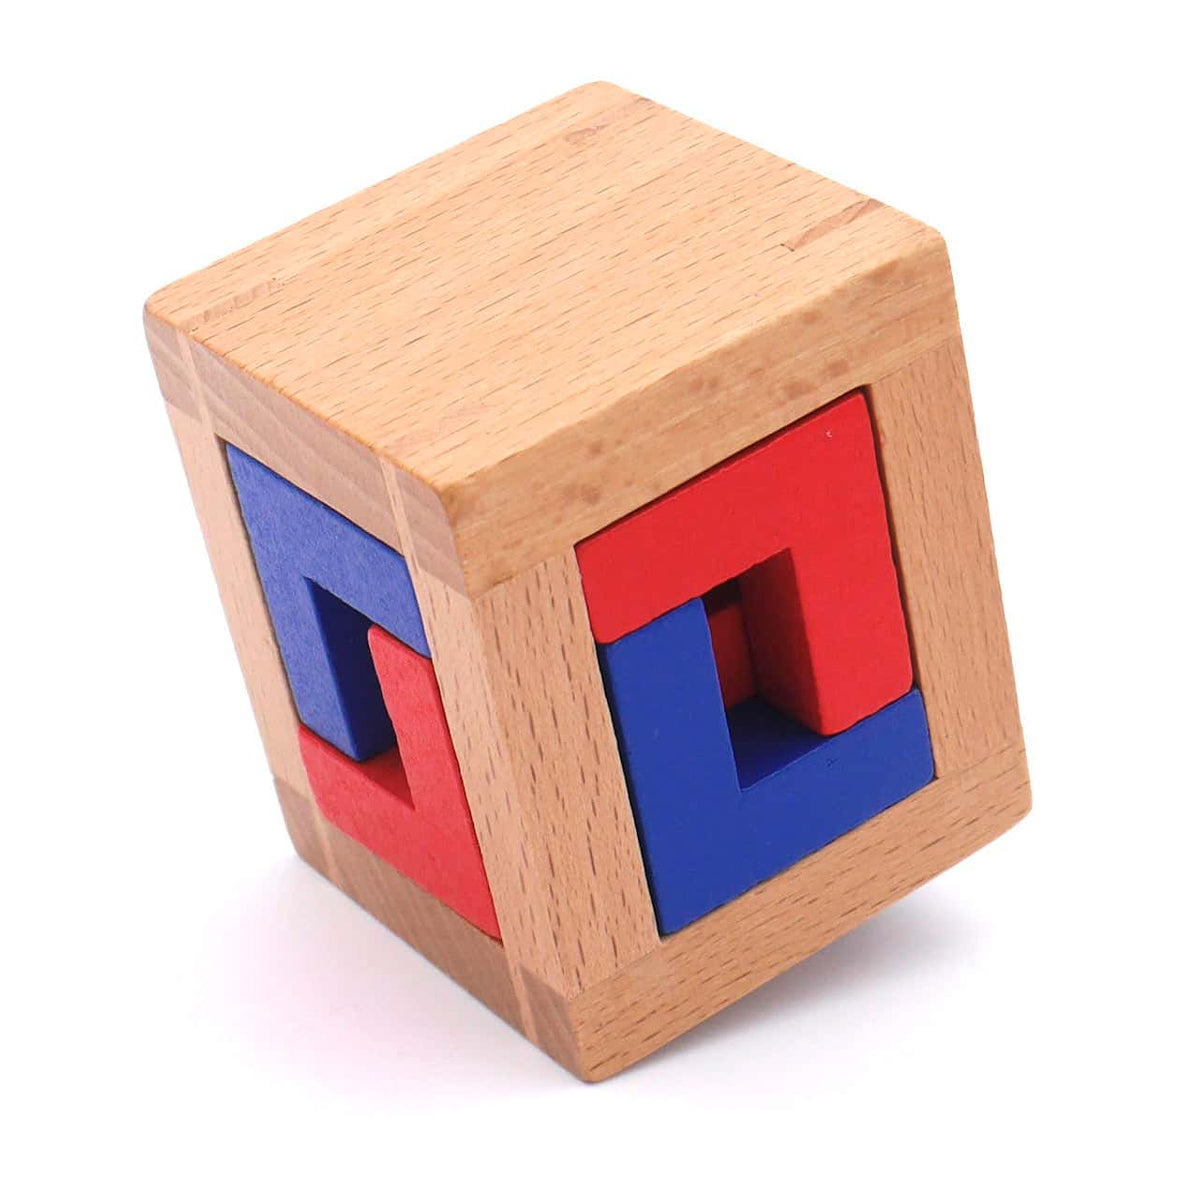 4 CAGED PUZZLE - sehr schwieriges Interlocking-Puzzle